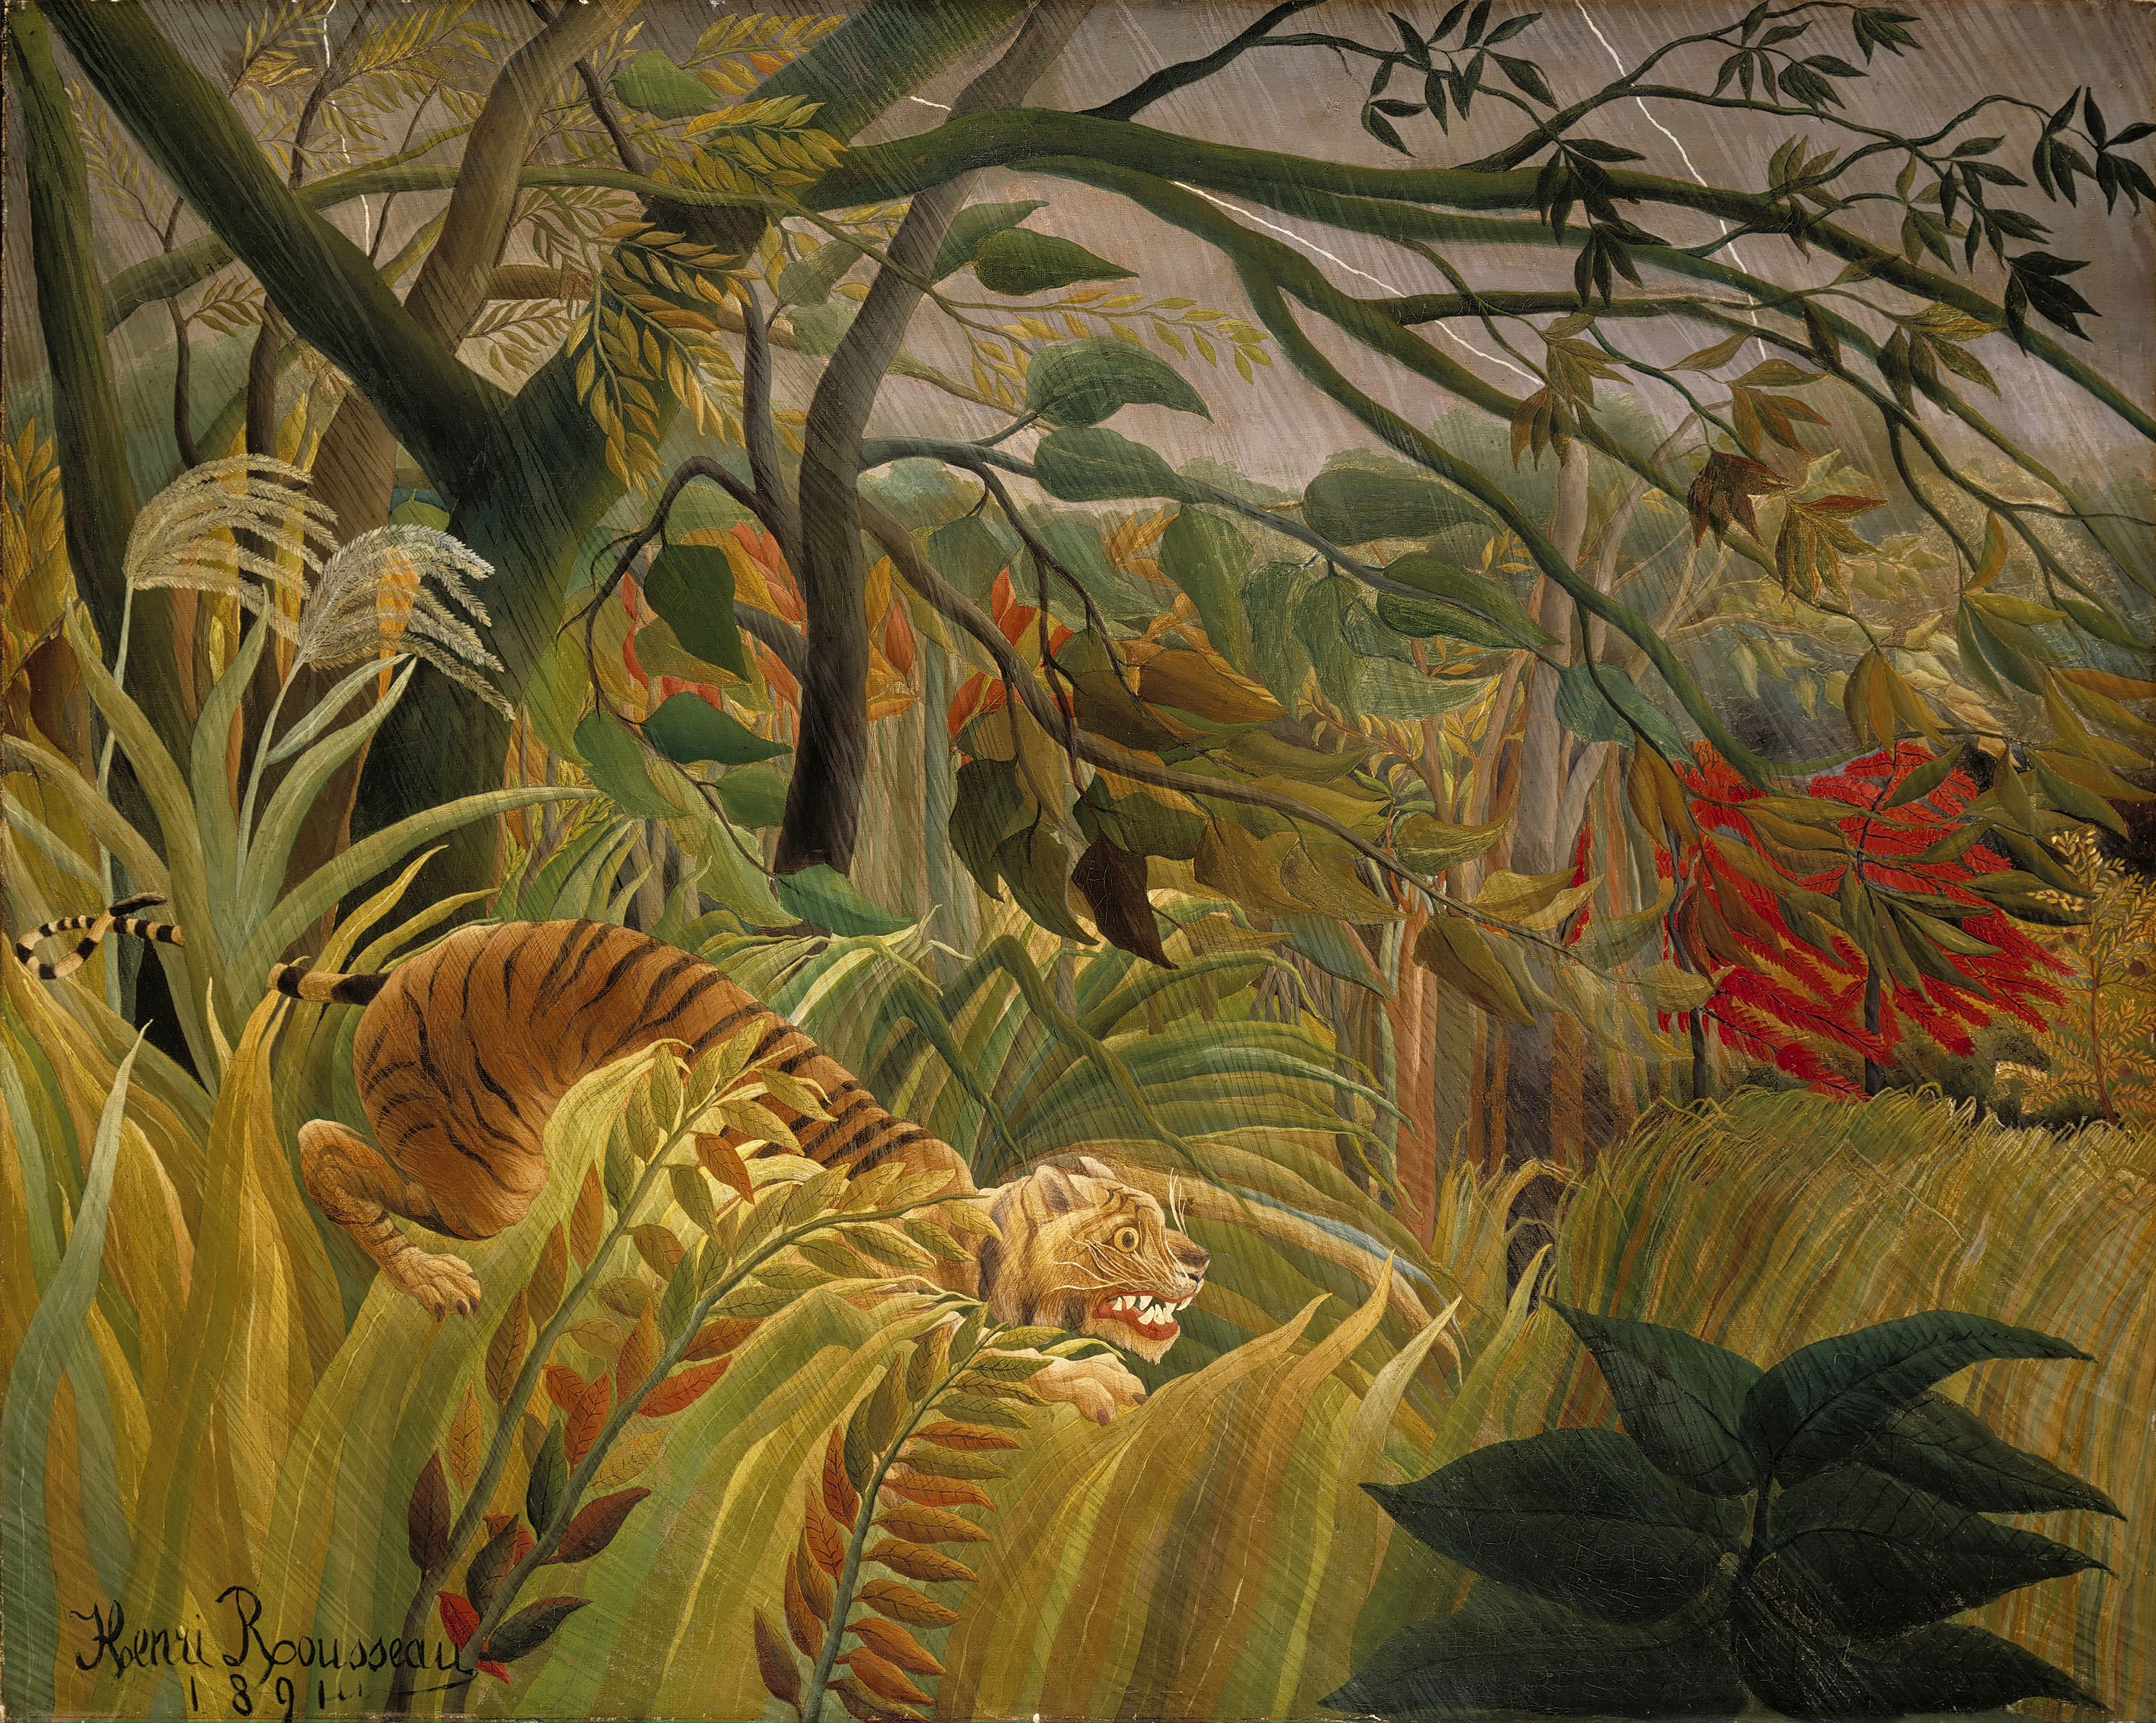 Surpris ! ou Tigre dans une tempête tropicale by Henri Rousseau - 1891 - 129.8 x 161.9 cm 